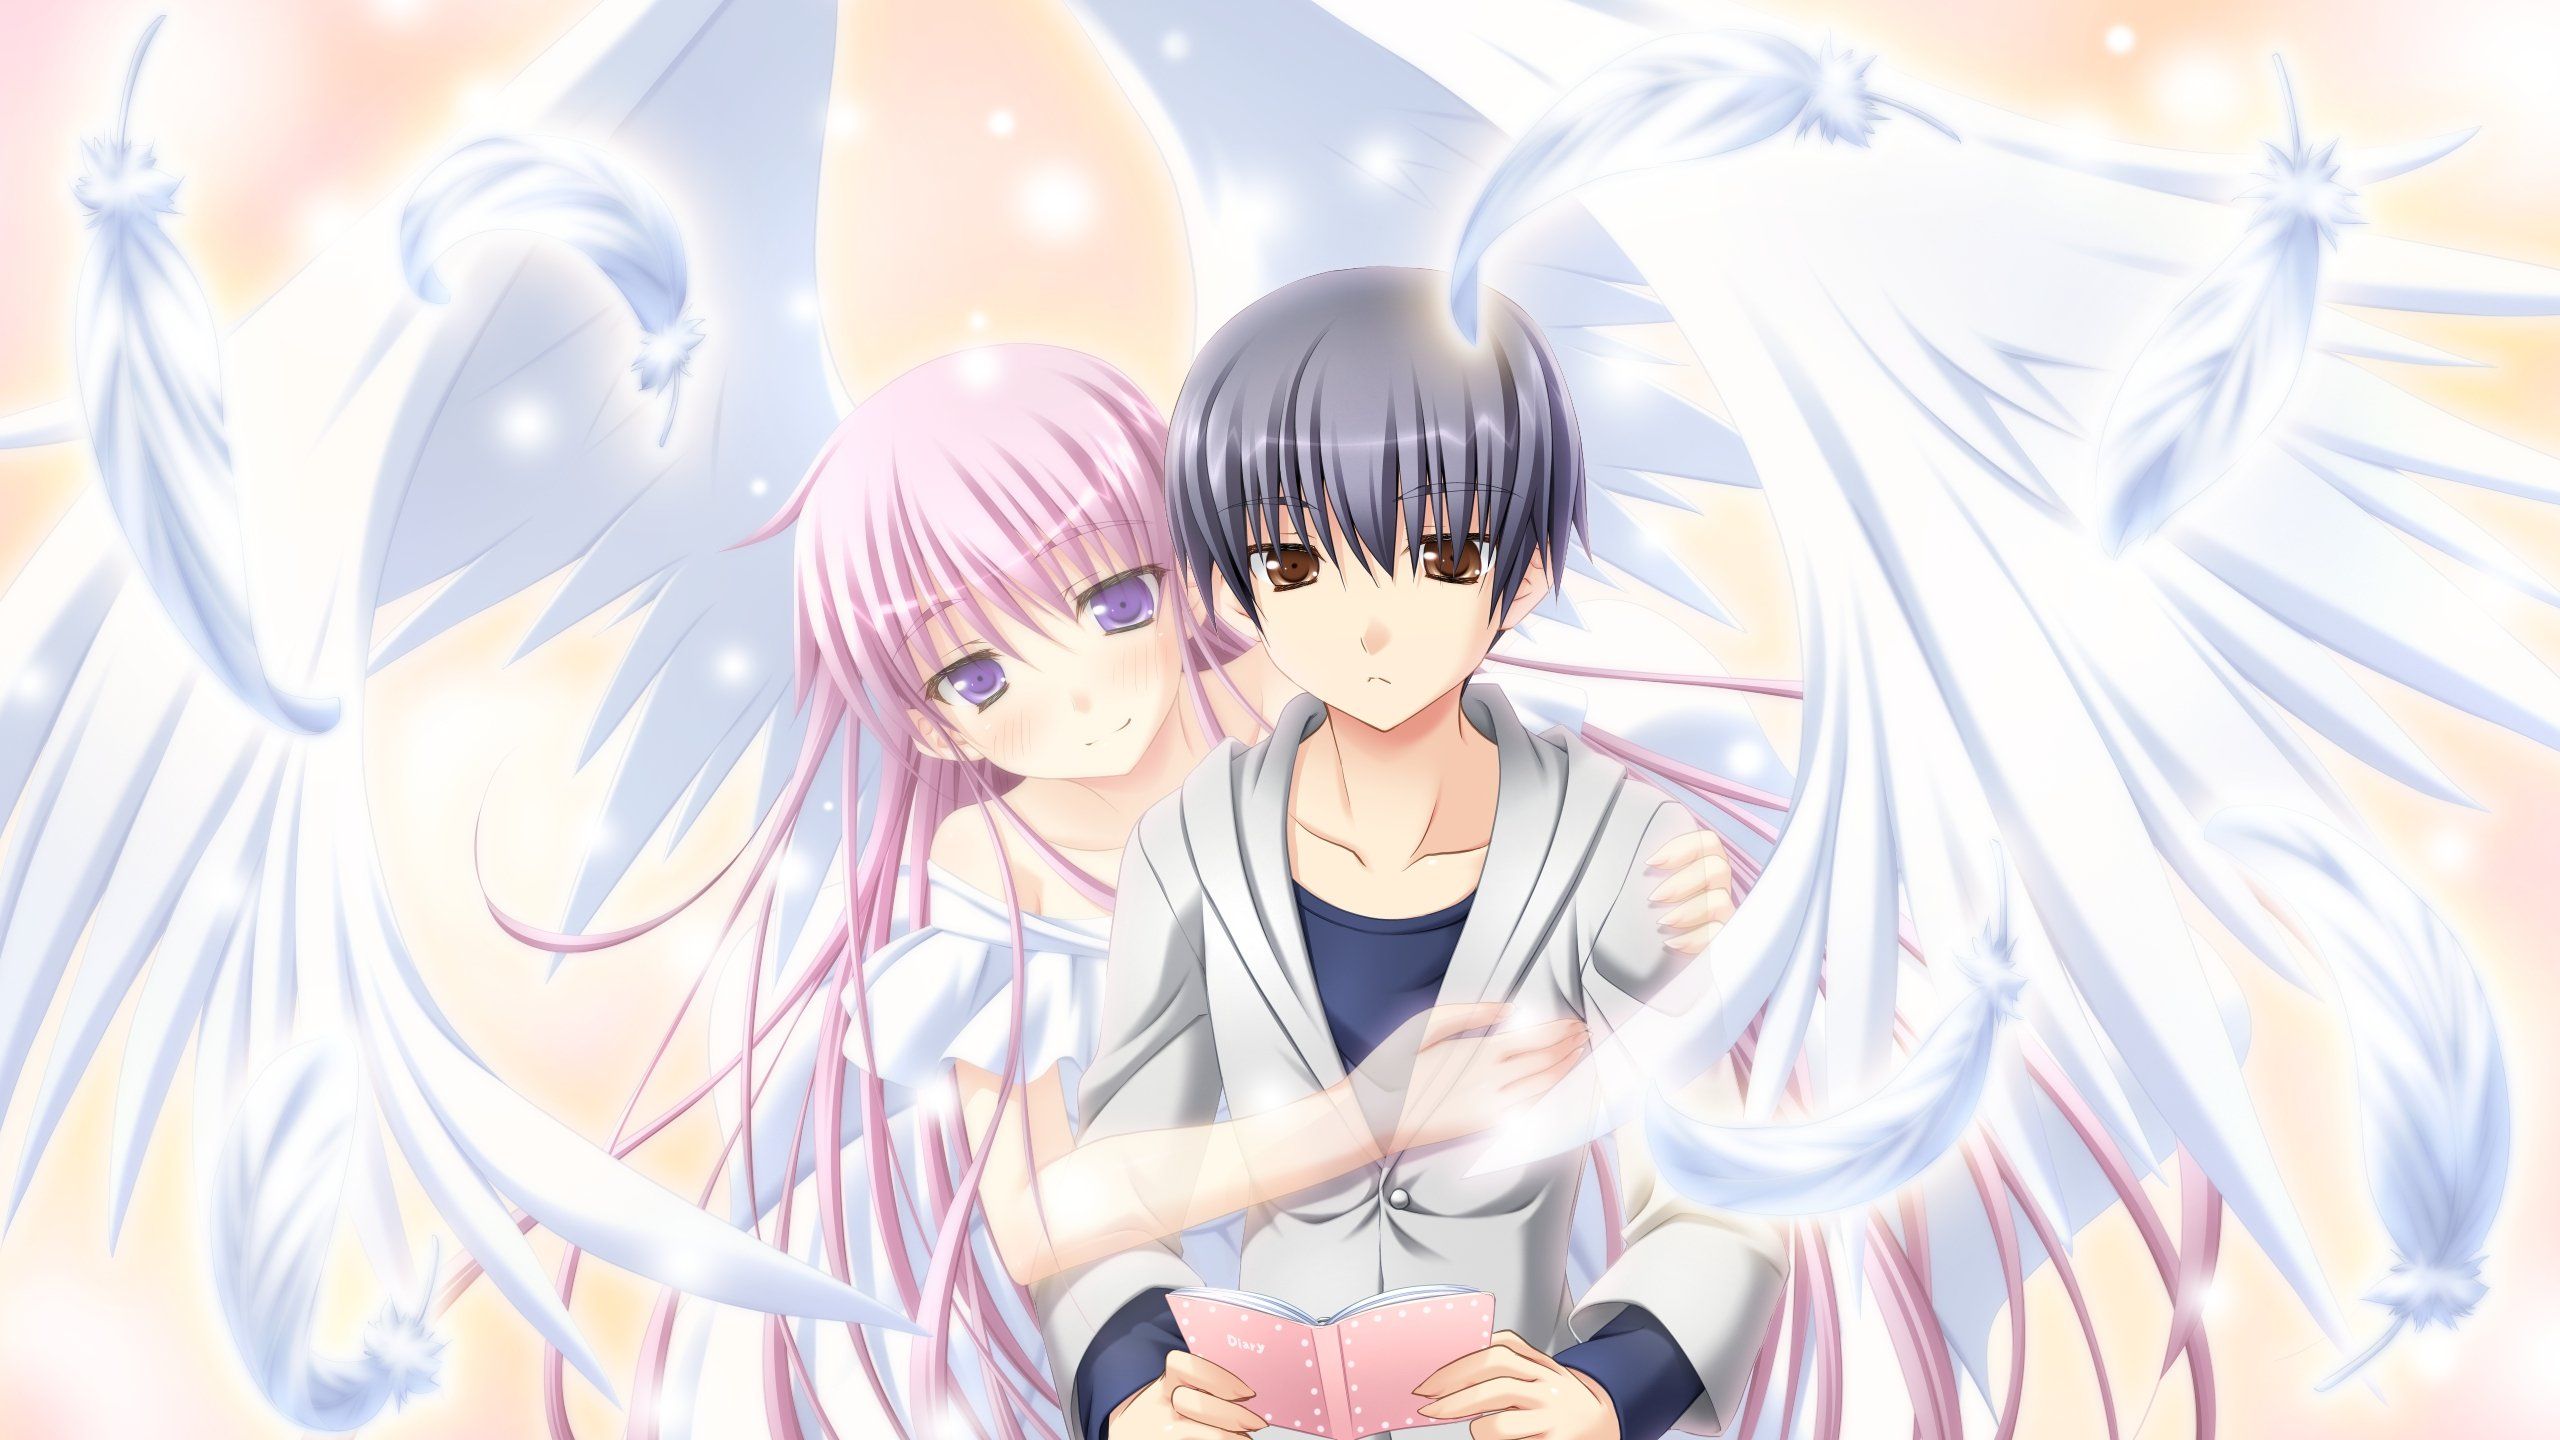 Anime Angel Girl Wallpaper Free Anime Angel Girl Background